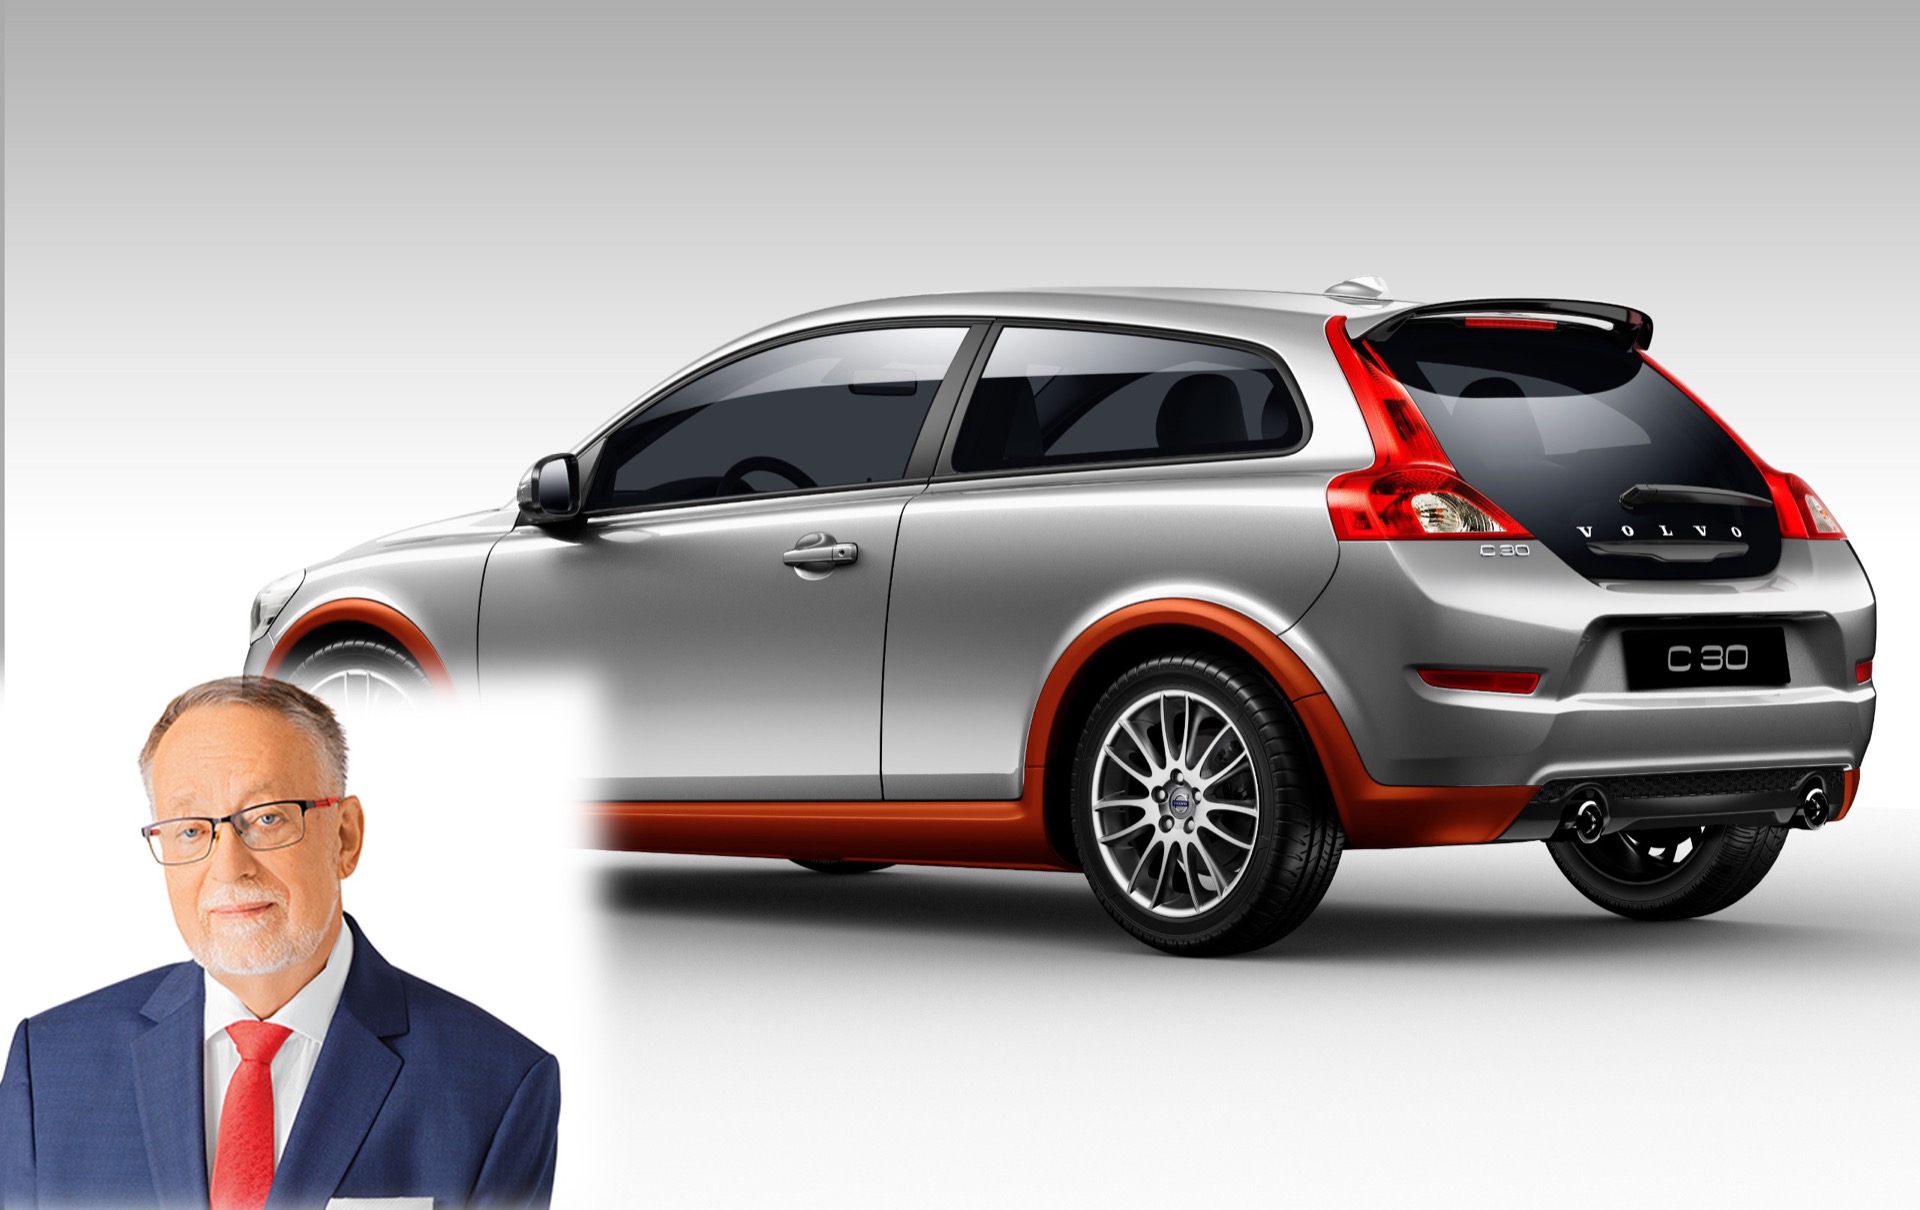 Candidati presidenziali e auto: Jaroslav Bašta preferisce la sicurezza di una Volvo, ma come presidente guiderebbe una Škoda